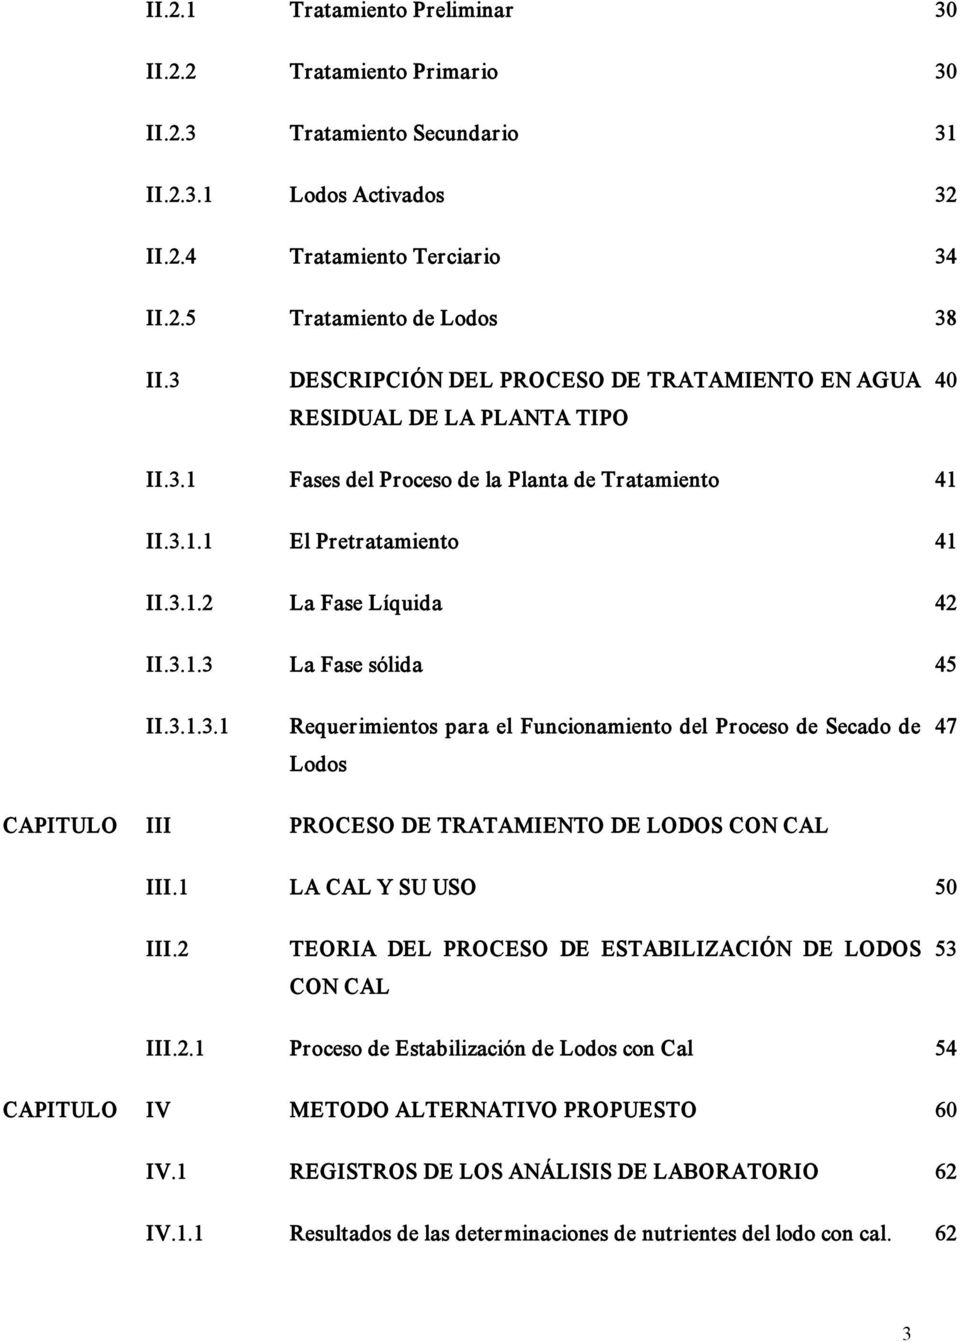 3.1.3.1 Requerimientos para el Funcionamiento del Proceso de Secado de Lodos 47 CAPITULO III PROCESO DE TRATAMIENTO DE LODOS CON CAL III.1 LA CAL Y SU USO 50 III.